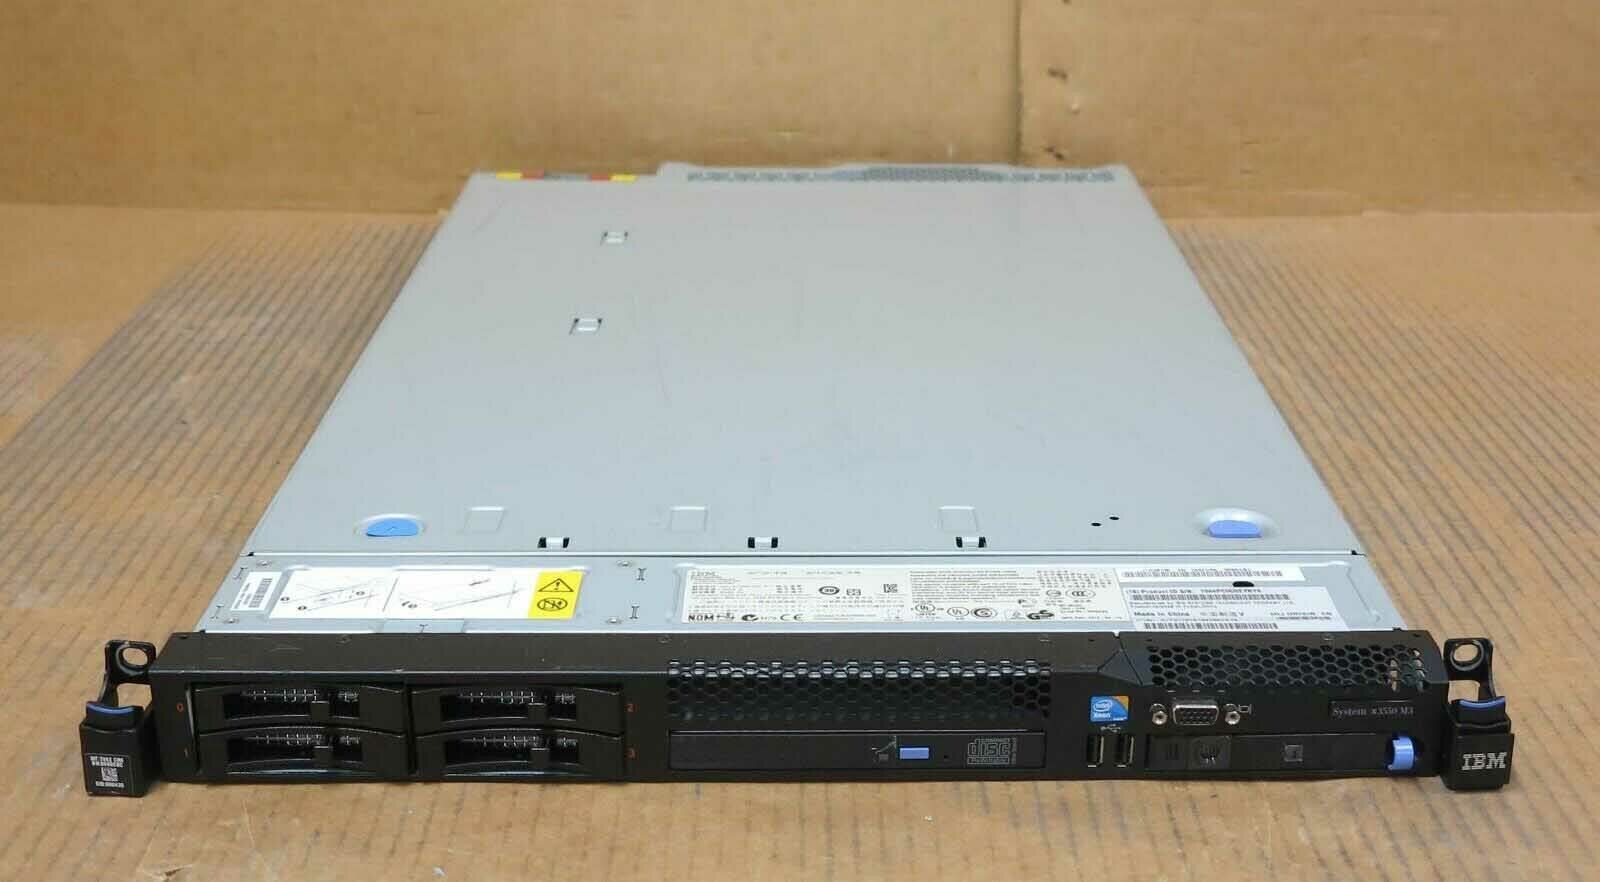 IBM System x3550 M3 7042-CR6 4-C E5630 2.53GHz 4GB Ram 4x Bay 1U RAID Server